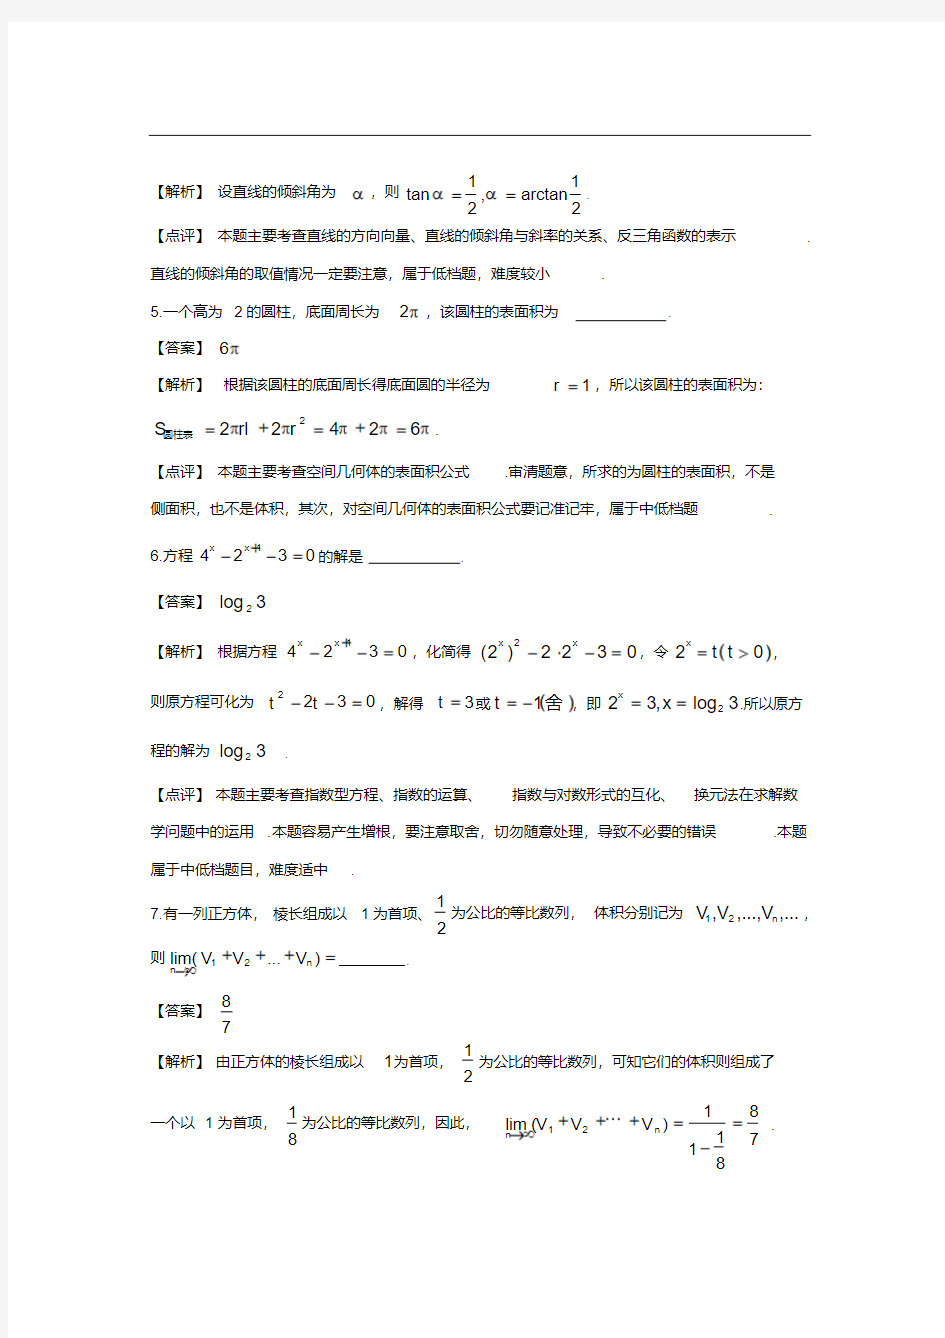 2012年上海高考文科数学试卷真题及答案